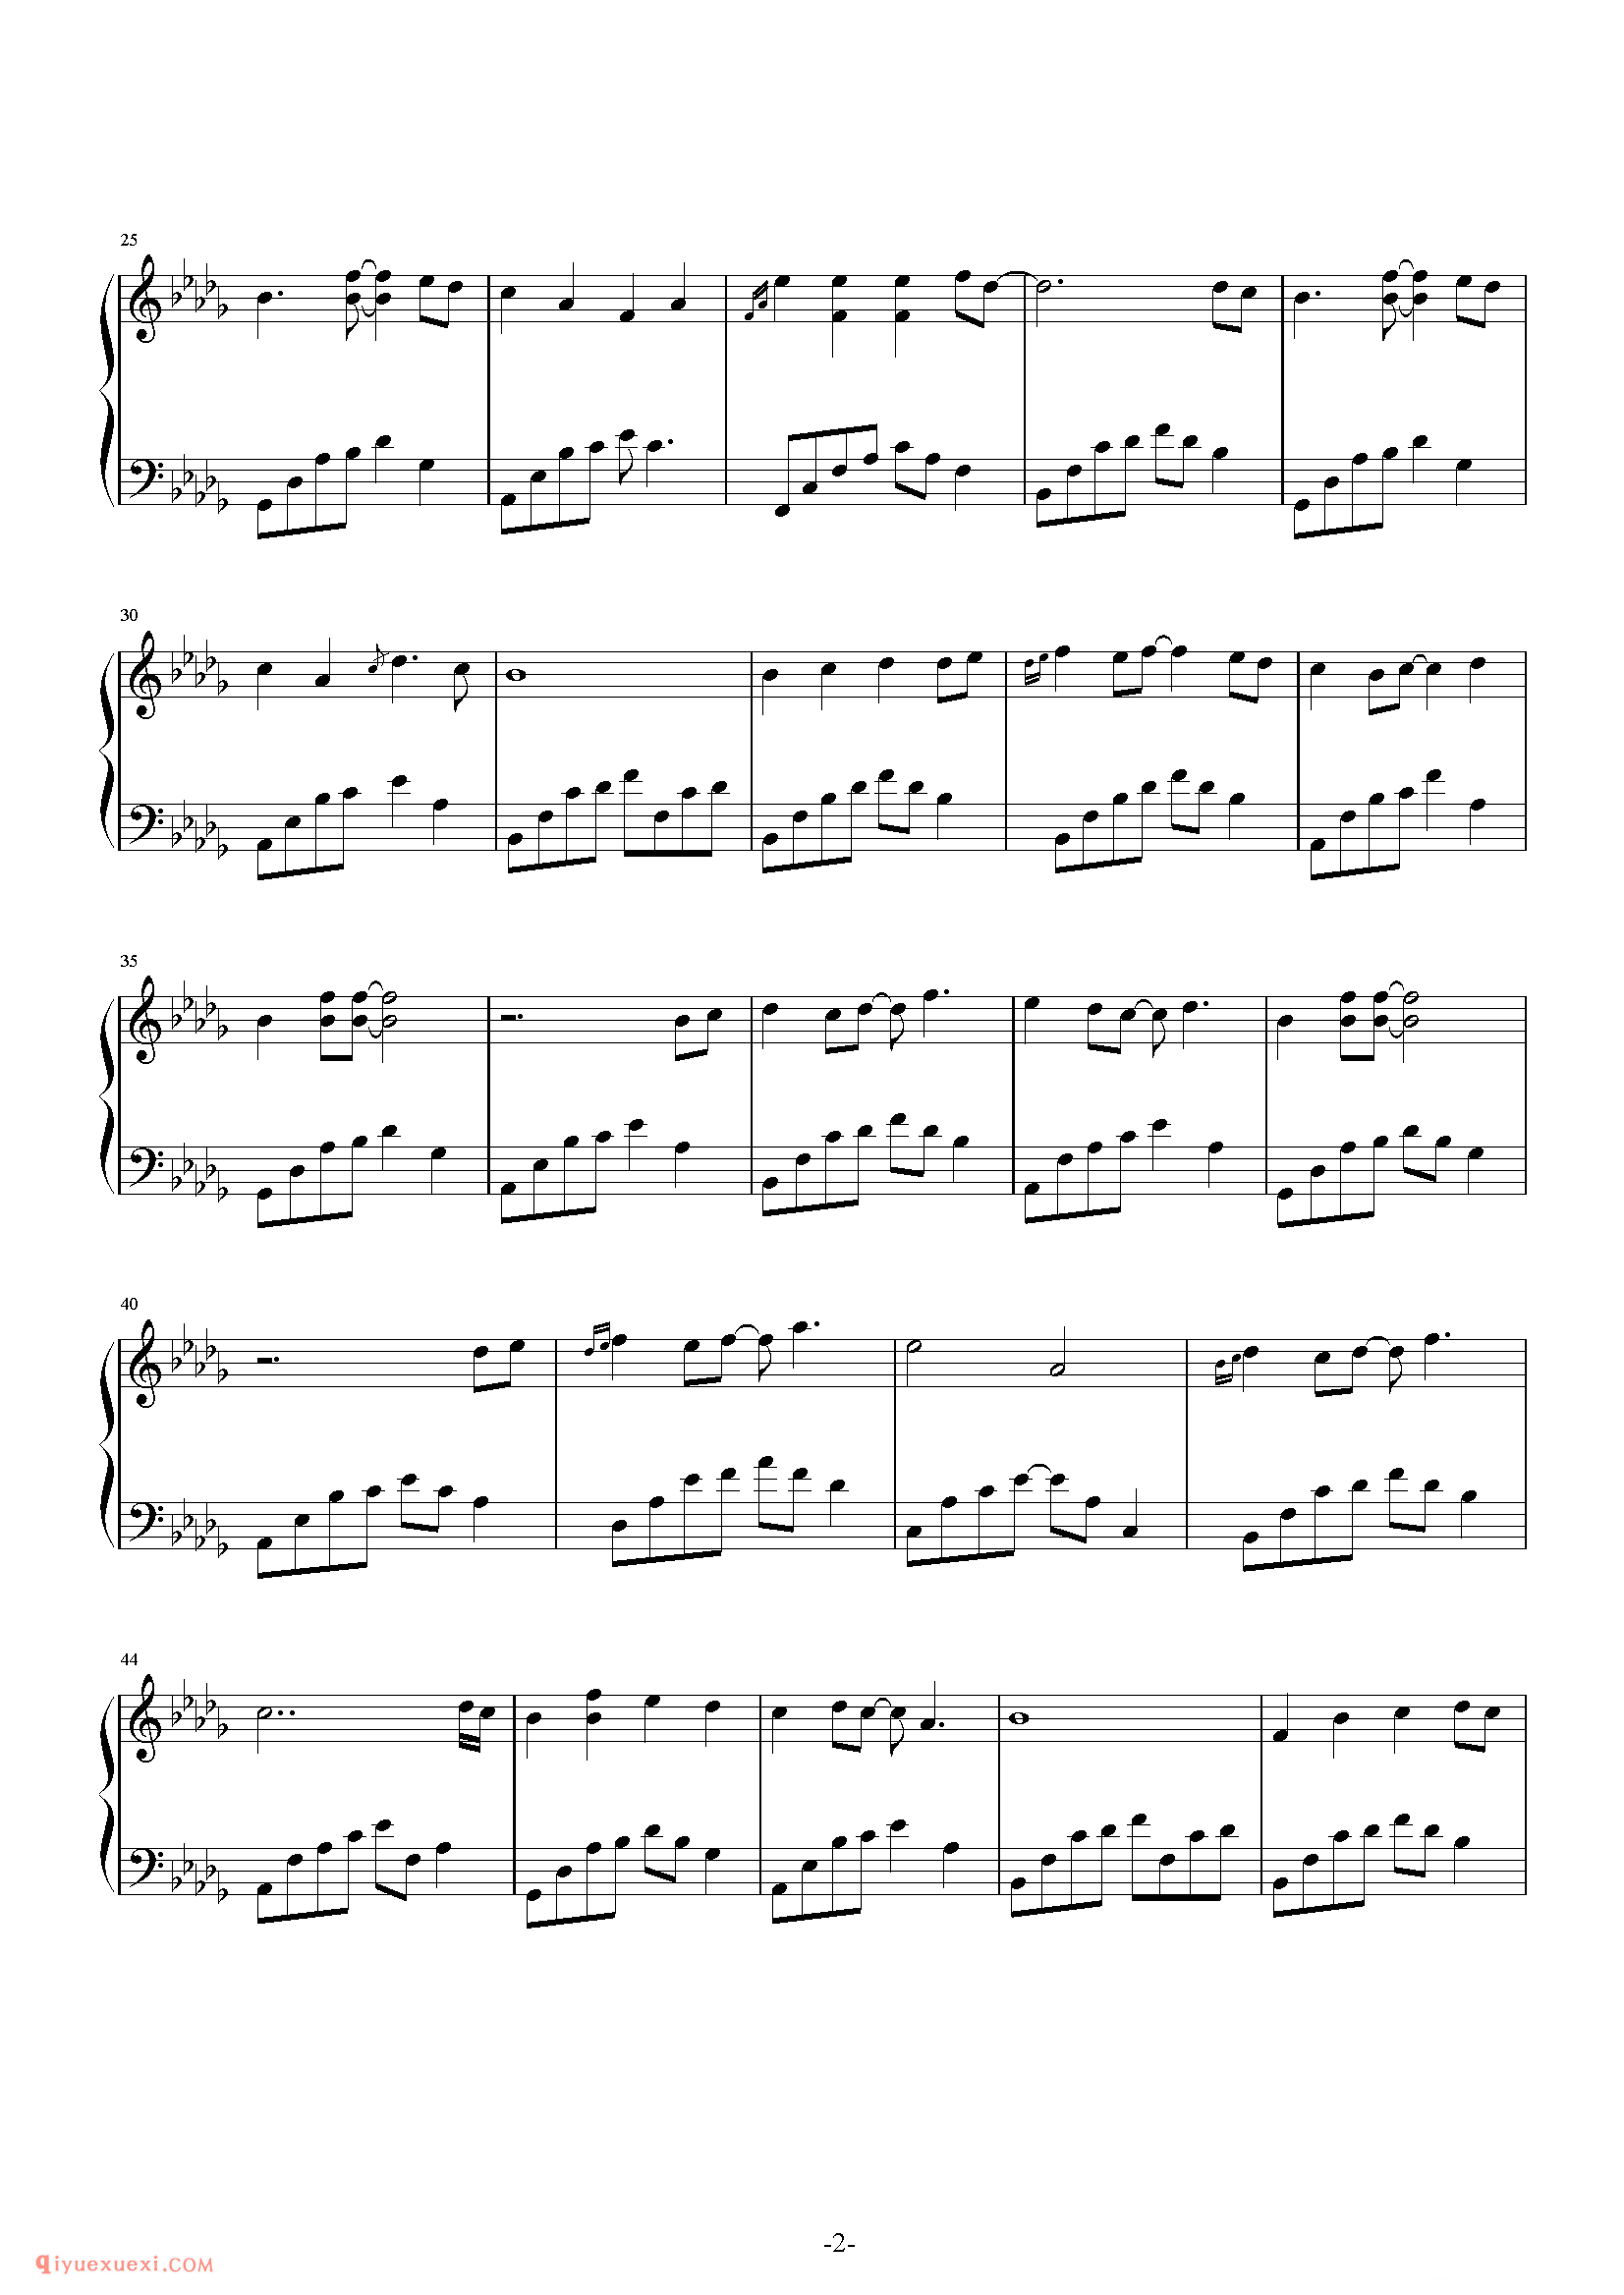 石进《夜的钢琴曲》第18首_石进夜的钢琴曲(18)五线谱